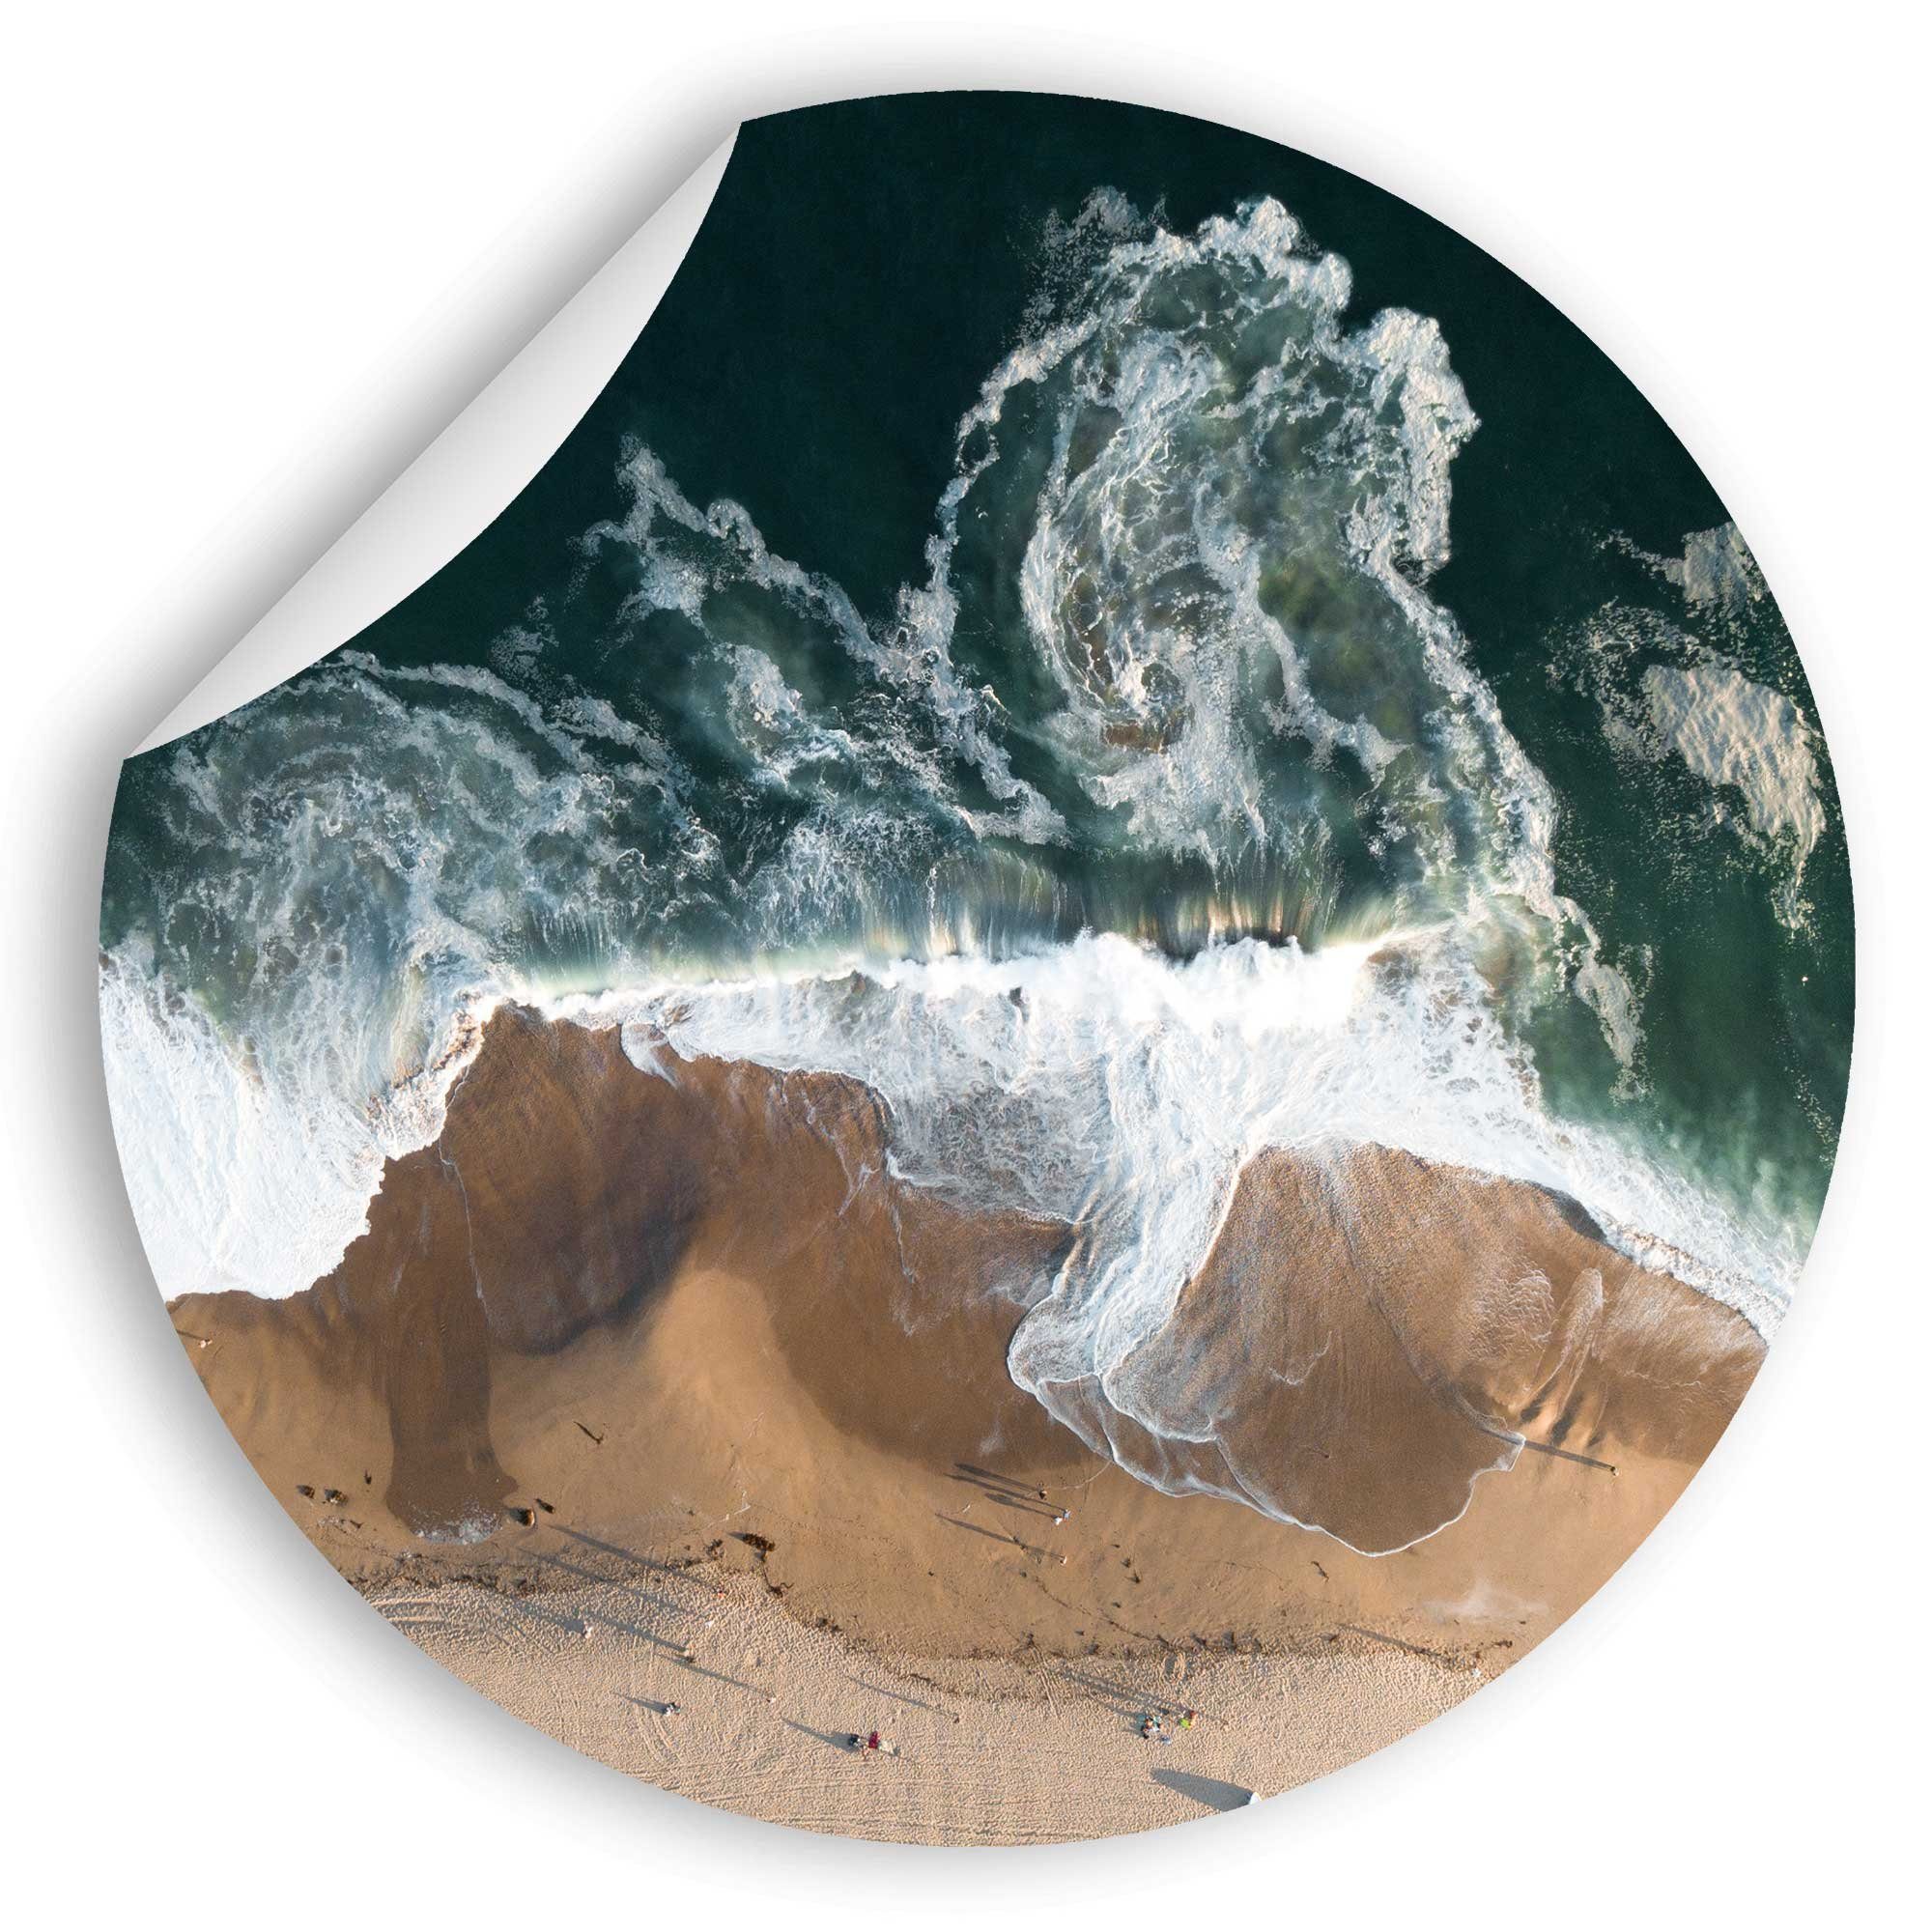 WallSpirit Wandsticker Wandaufkleber rund "Strand und Meer", Selbstklebend, rückstandslos abziehbar